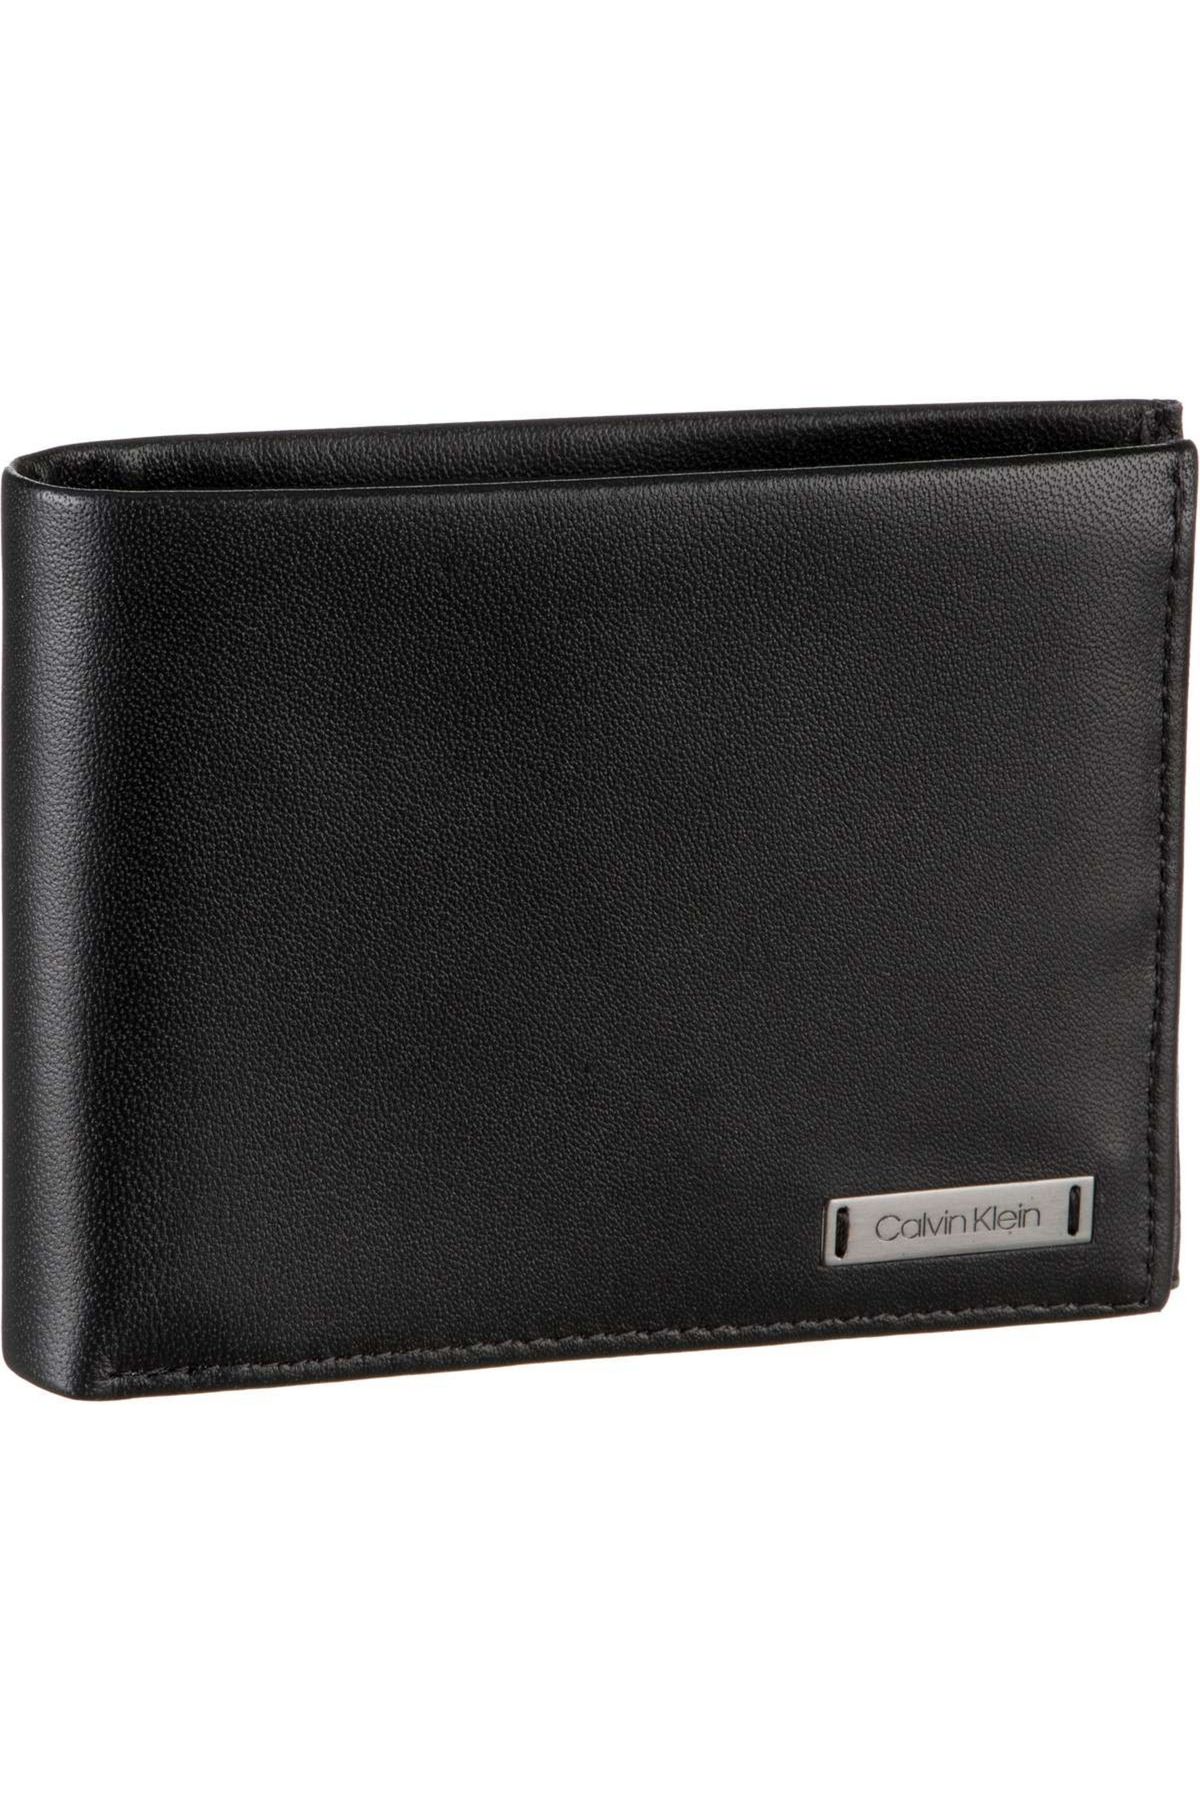 Calvin Klein Geldbörse Wallet Smooth With Coin Trendyol - 10CC Plaque